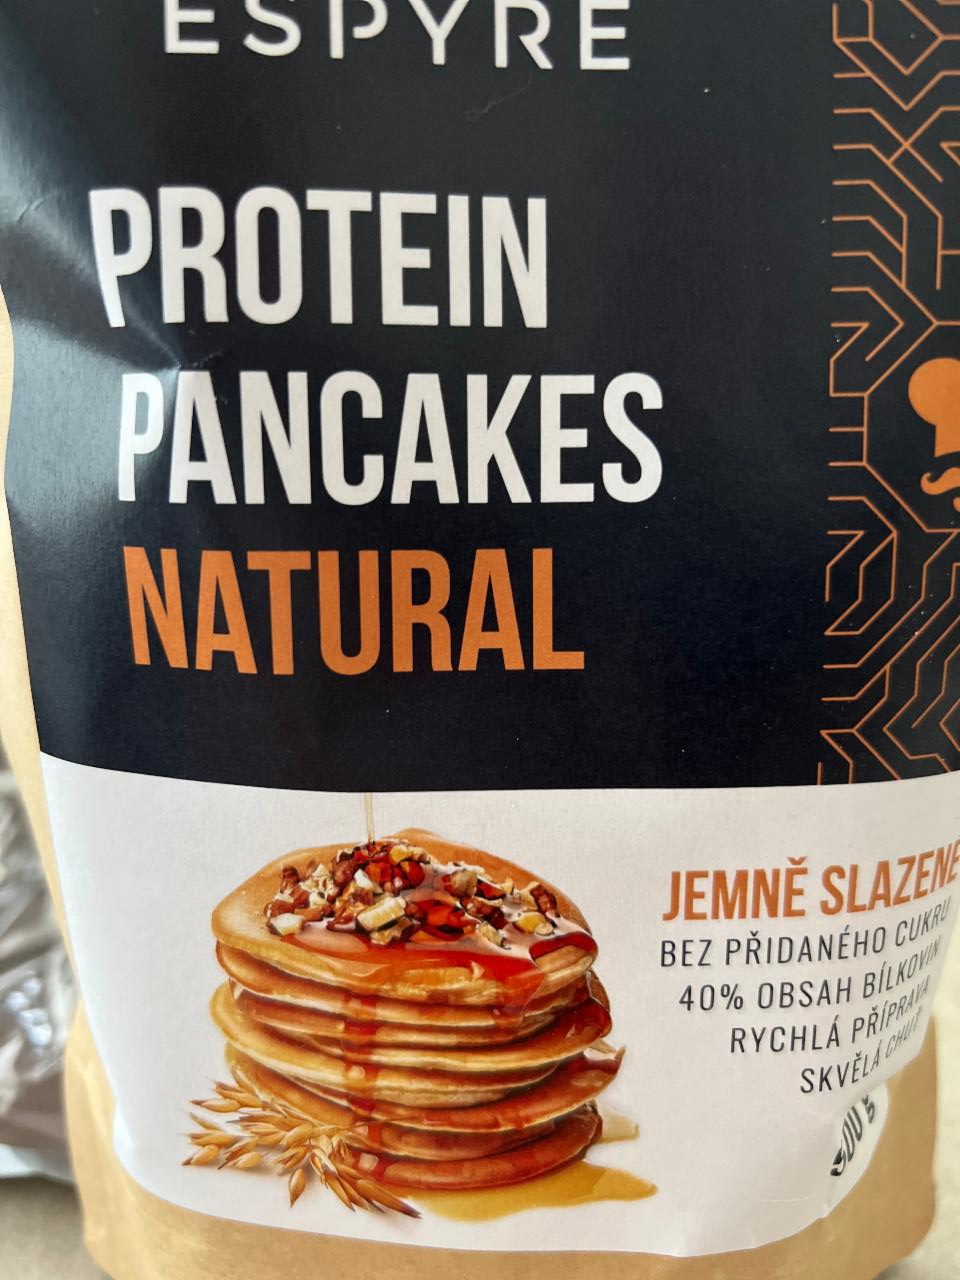 Fotografie - Espyre Protein Pancakes Natural